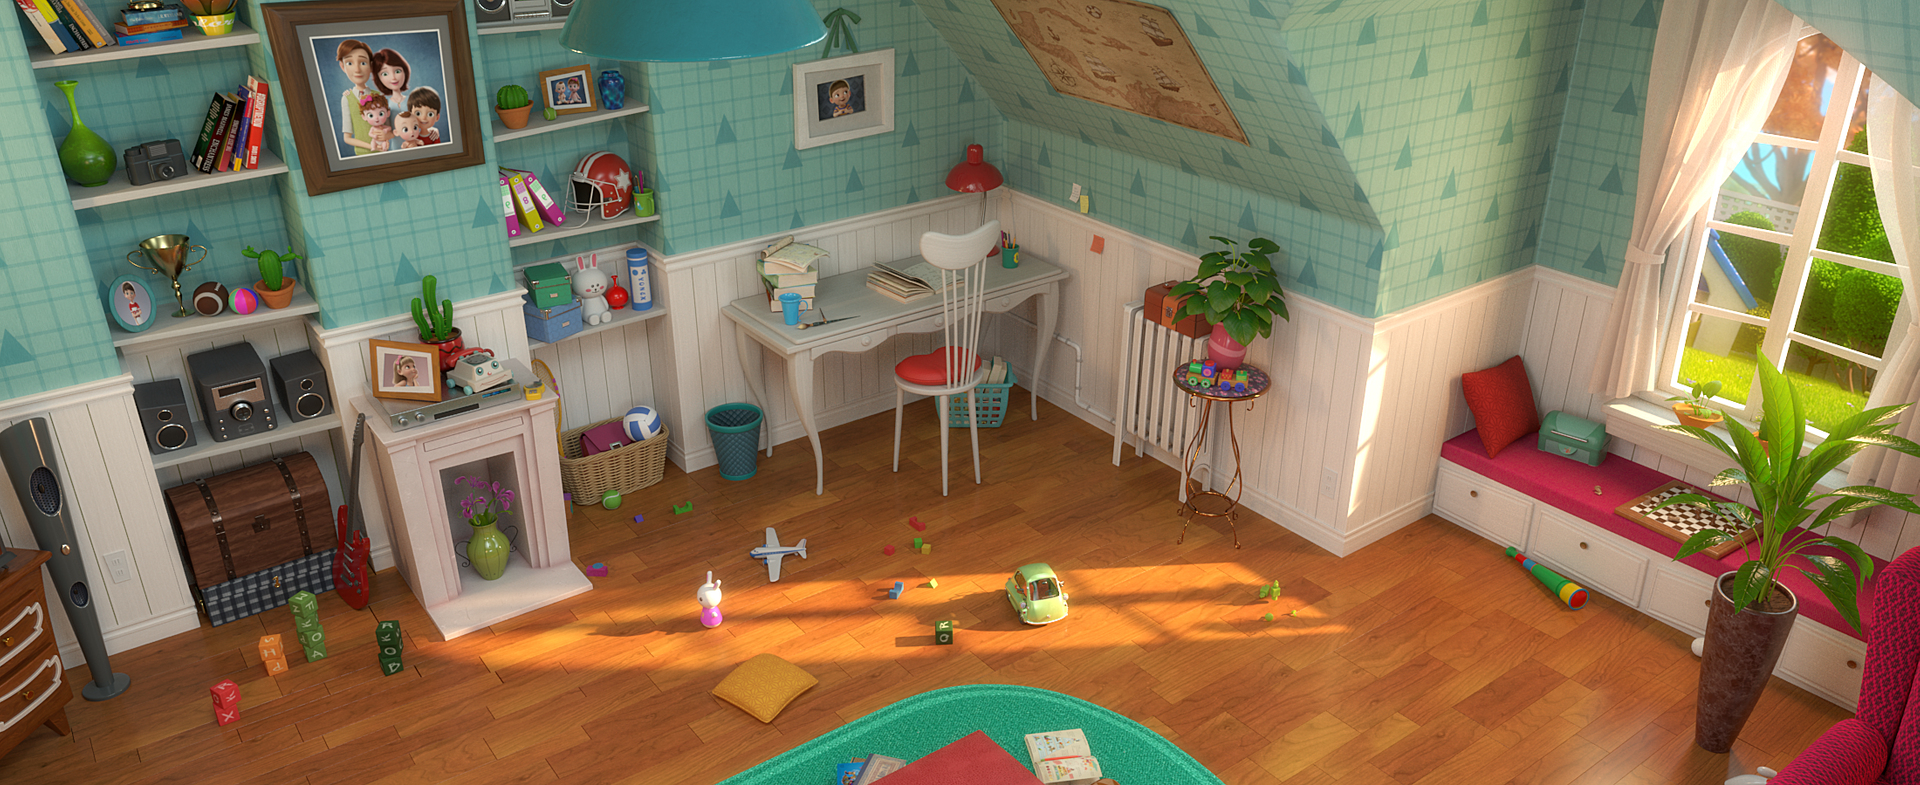 Cartoon Room Interior Full Version 3D 모델 - TurboSquid 1682518